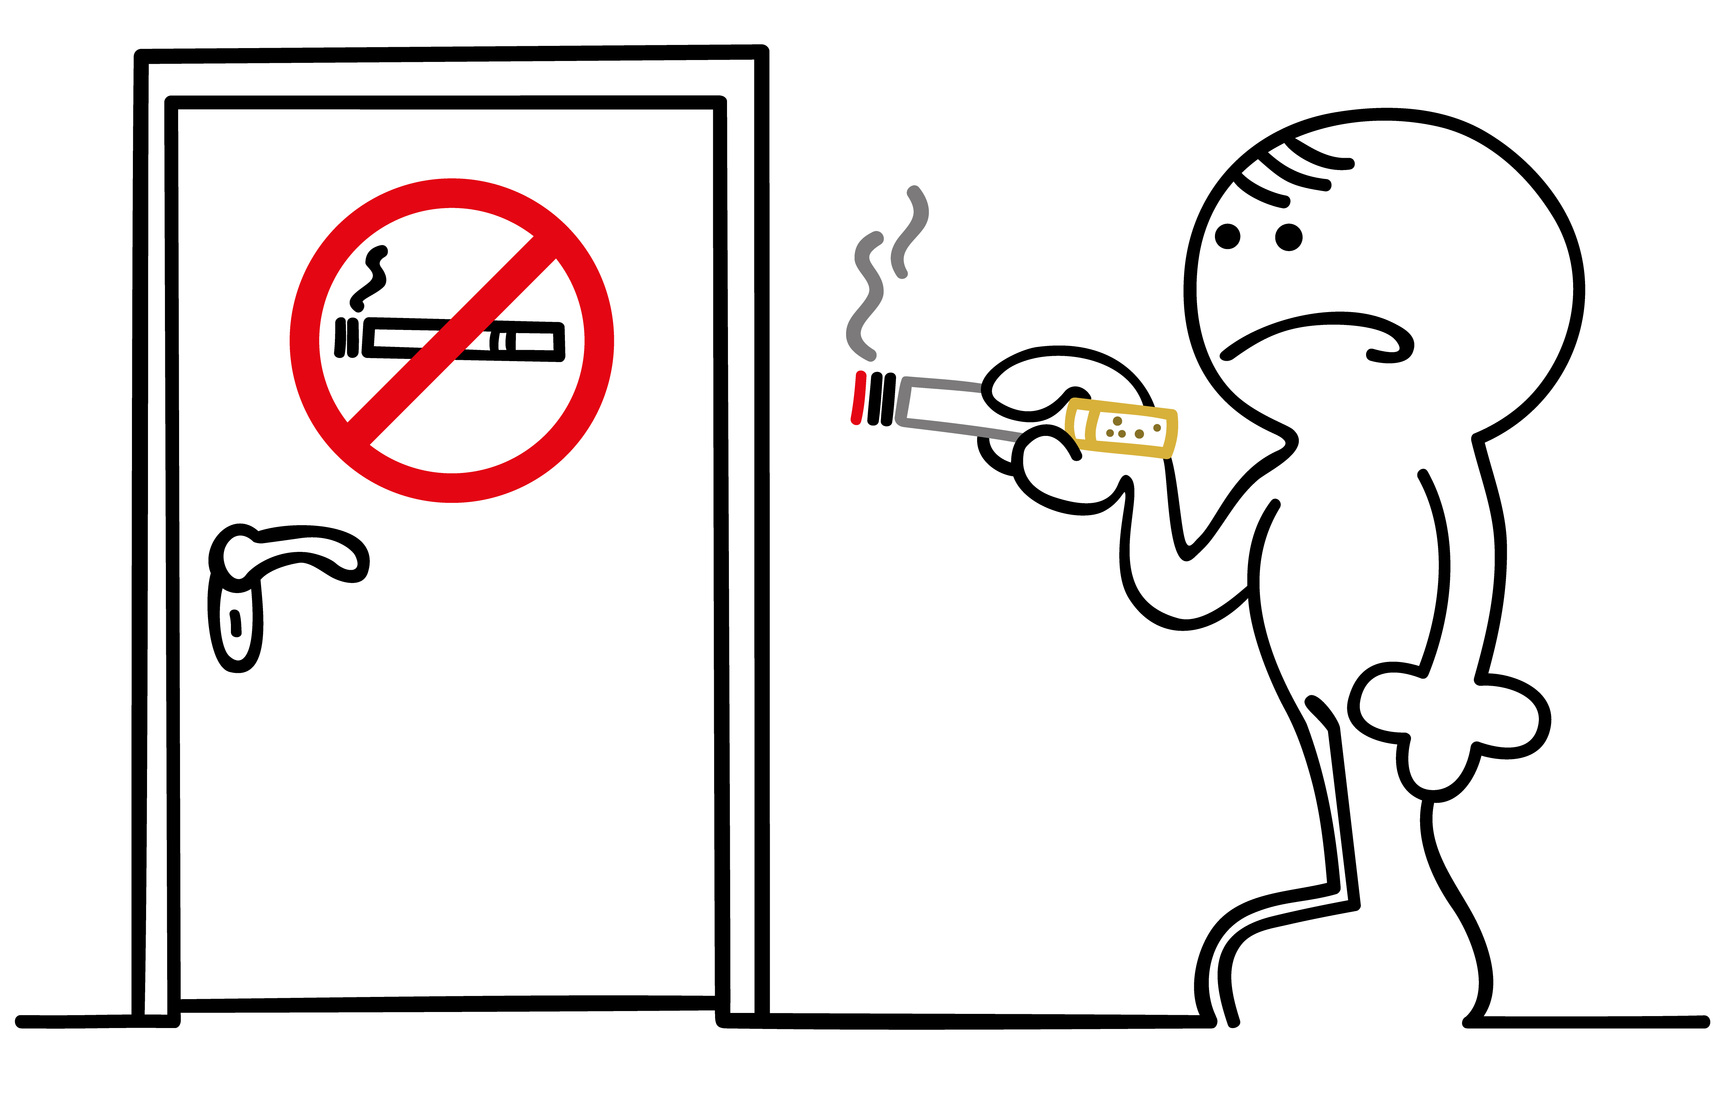 Курить в специально отведенных местах